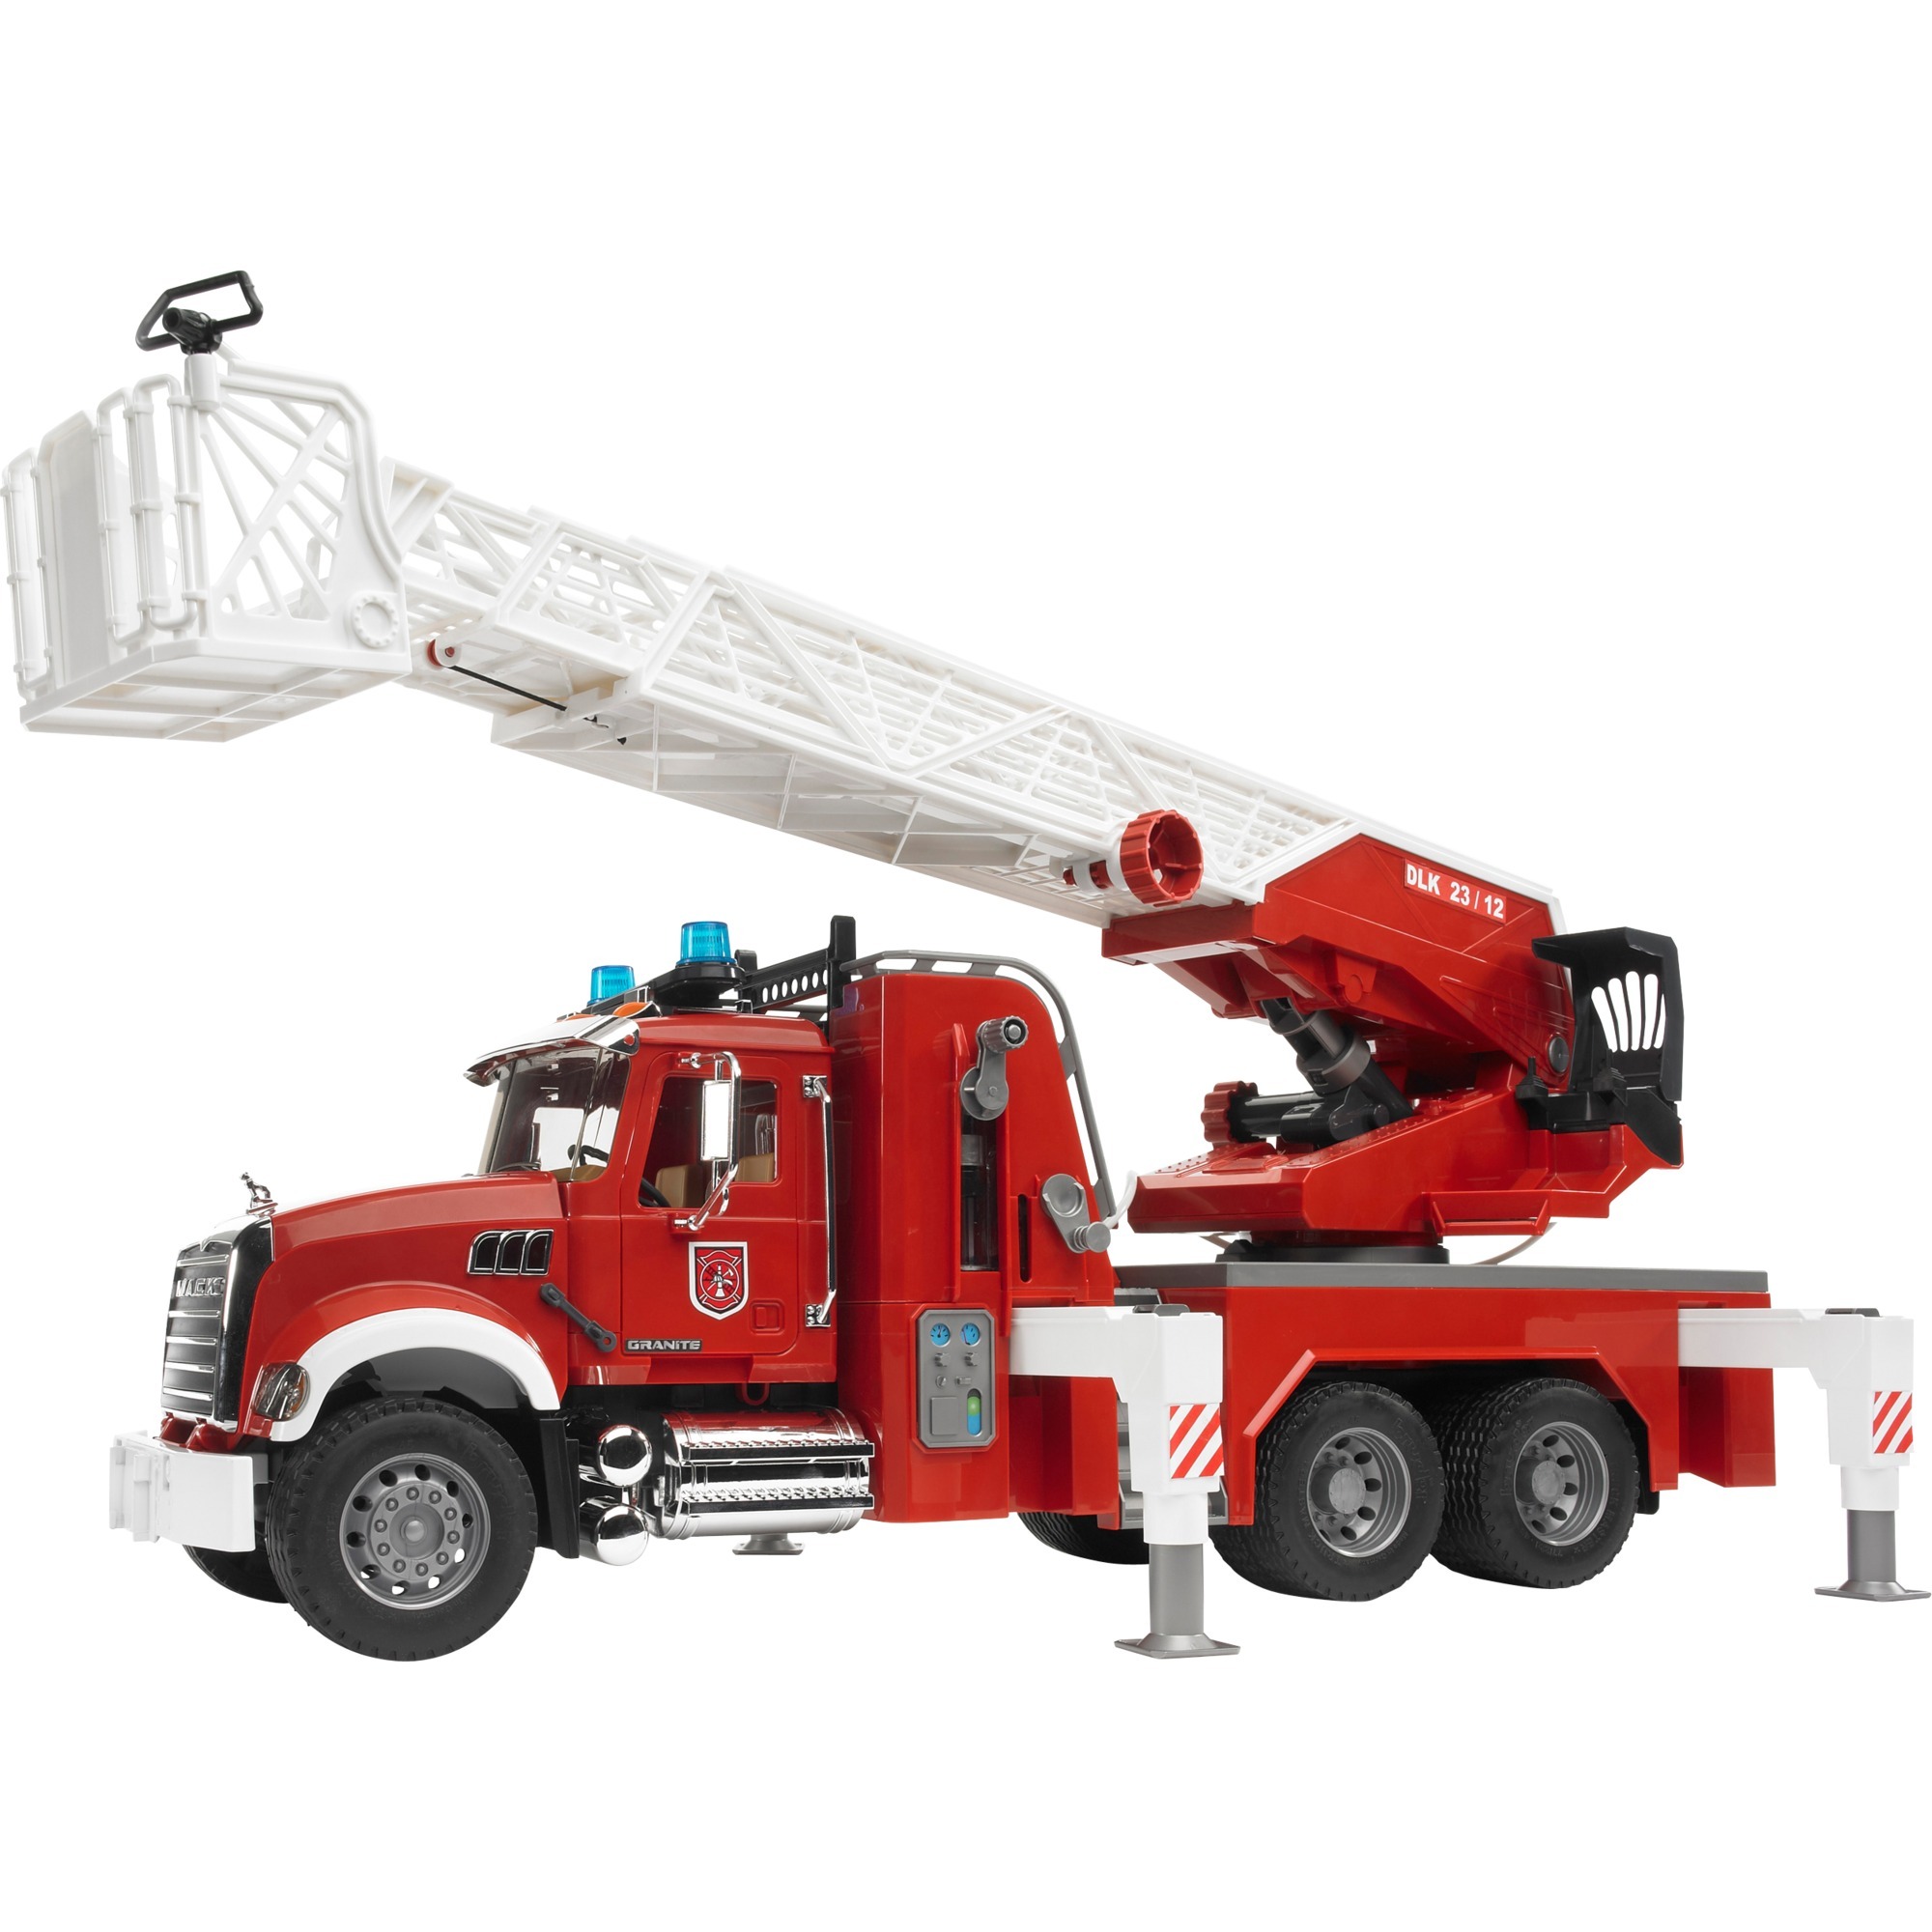 Image of Alternate - MACK Granite Feuerwehrleiterwagen, Modellfahrzeug online einkaufen bei Alternate